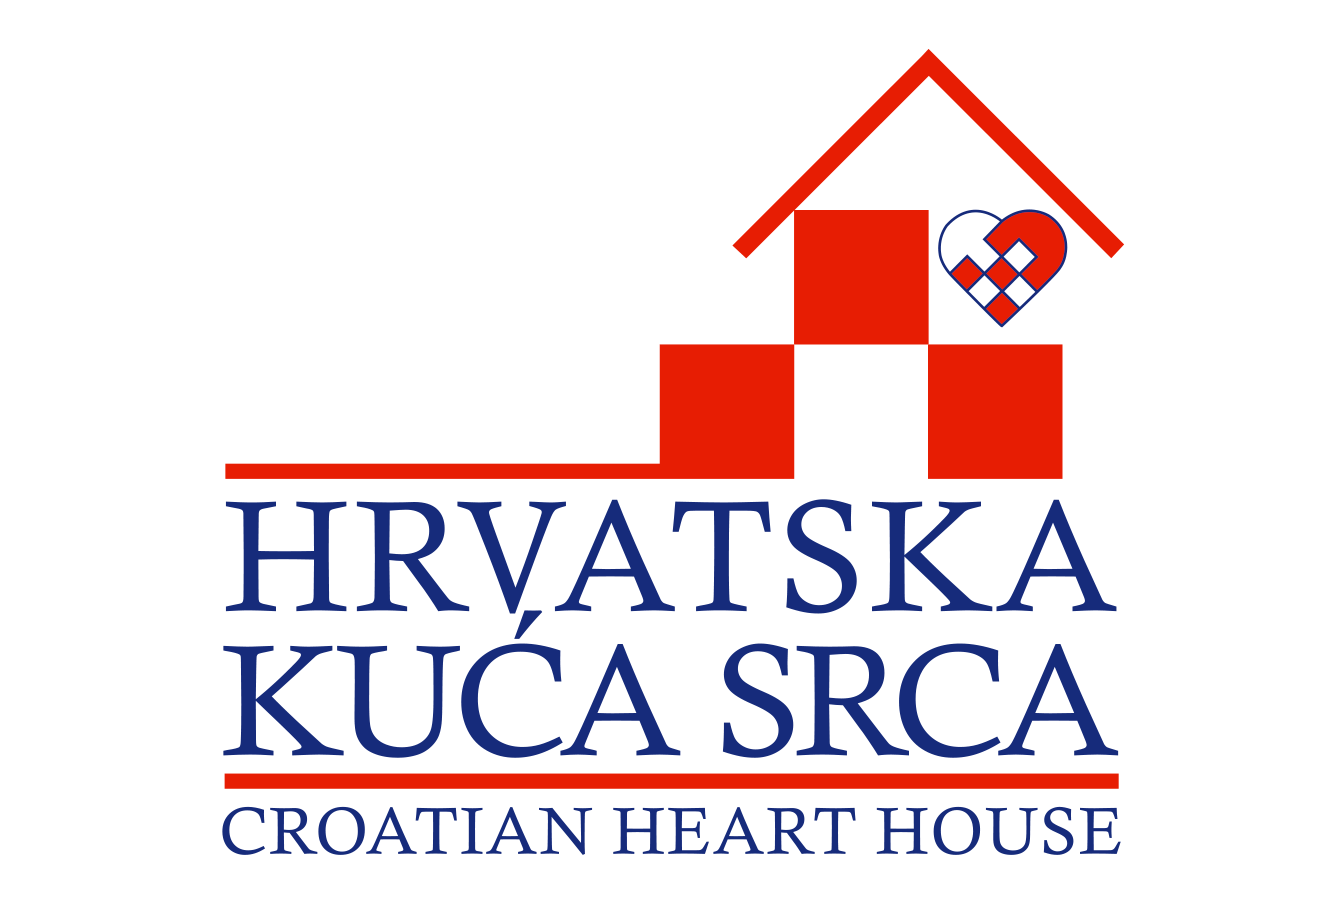 Hrvatska kuća srca podržava projekt Čuvari srca